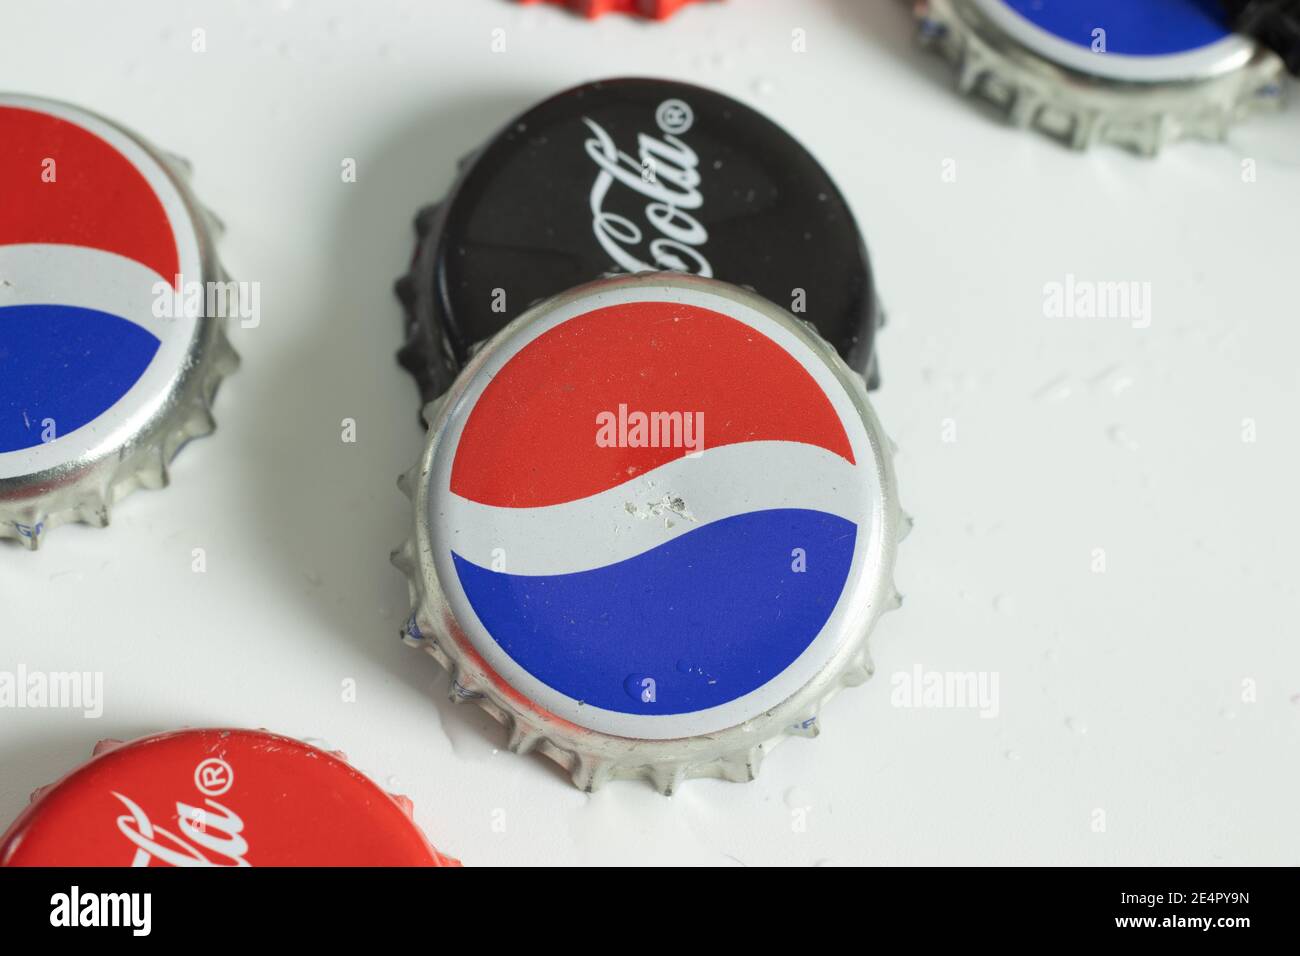 New York, États-Unis - 1er janvier 2021 : logo Pepsi sur bouchon de bouteille, vue de dessus, Illustration éditoriale Banque D'Images